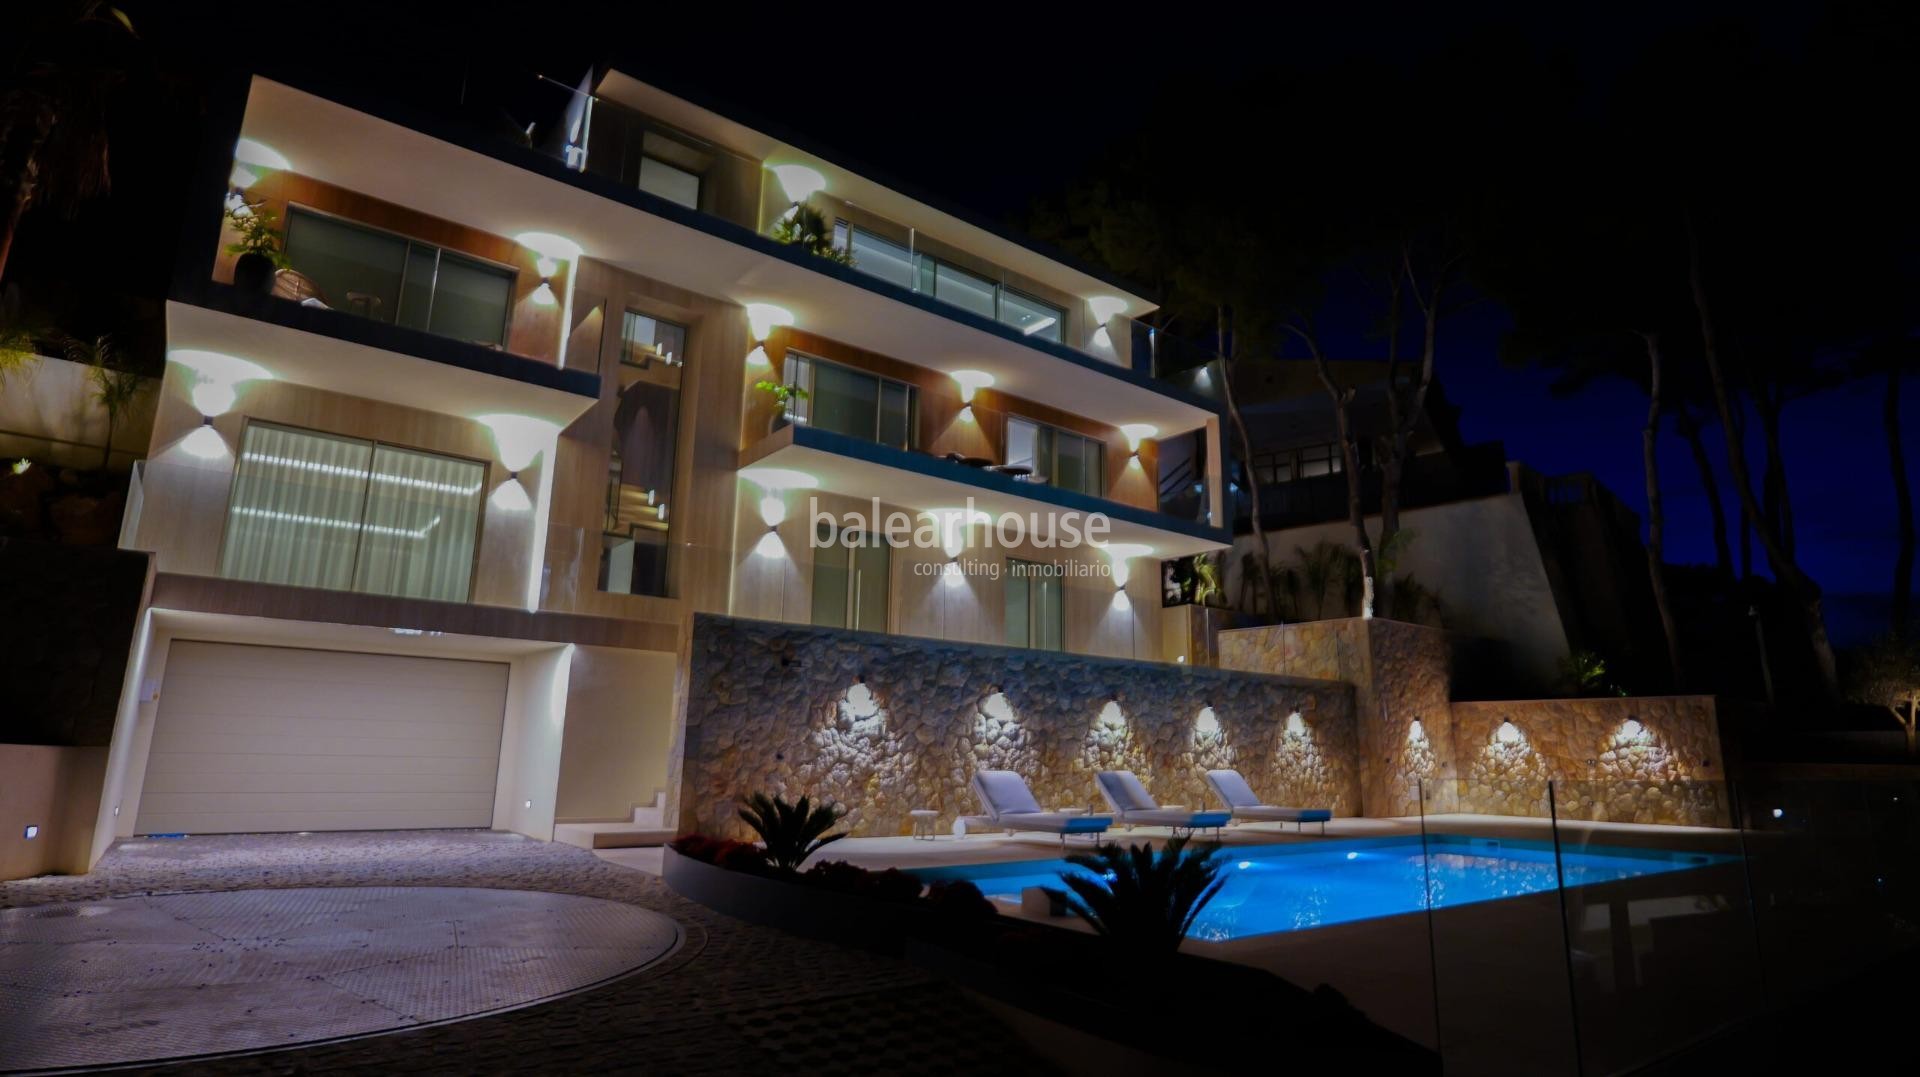 Excelente diseño moderno con increíbles vistas al mar en esta gran villa nueva en Santa Ponsa